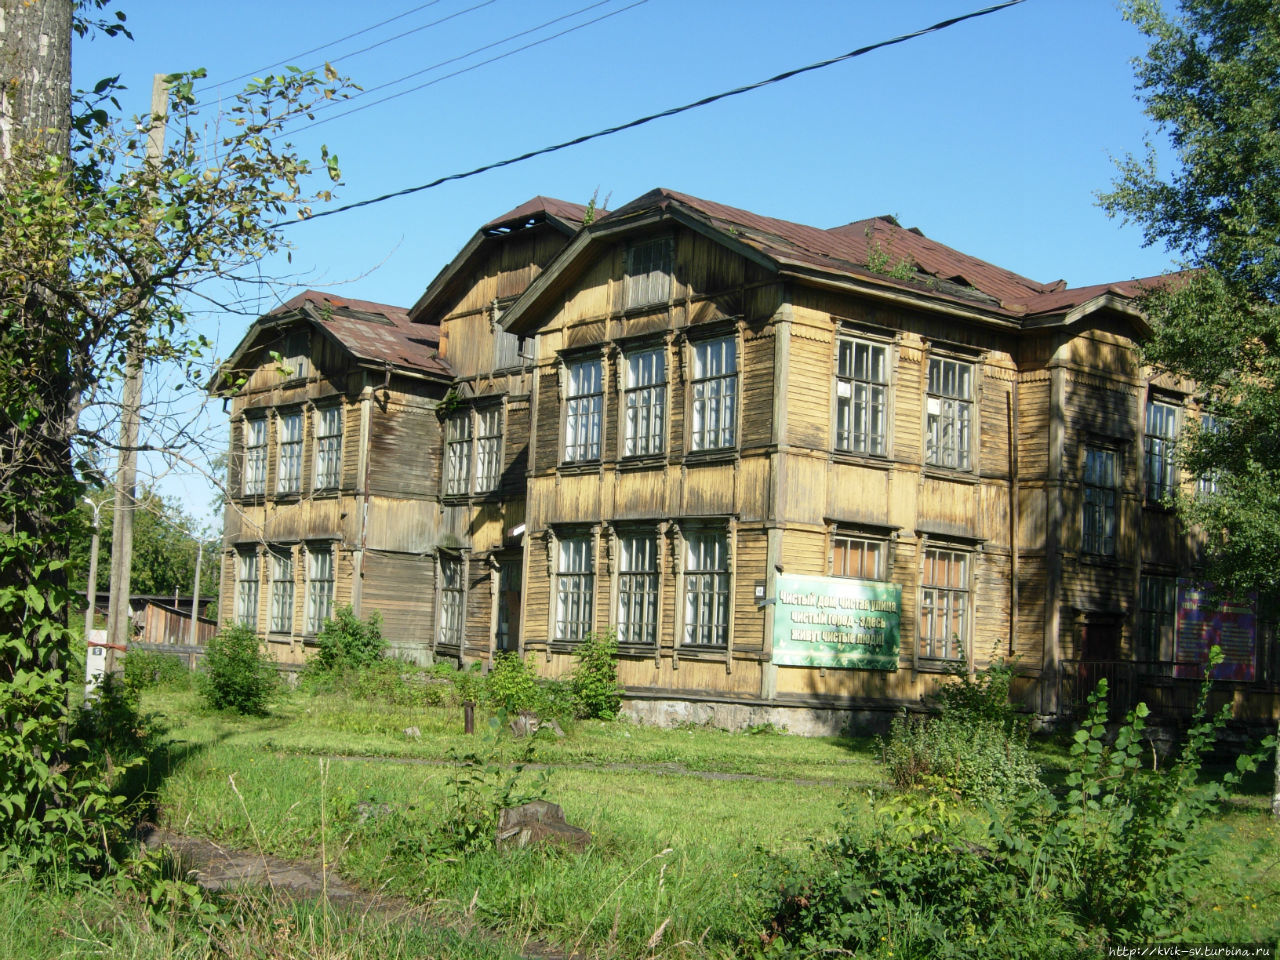 Самое красивое старое здание школы 38, построенной еще при царском режиме. Зуевка, Россия